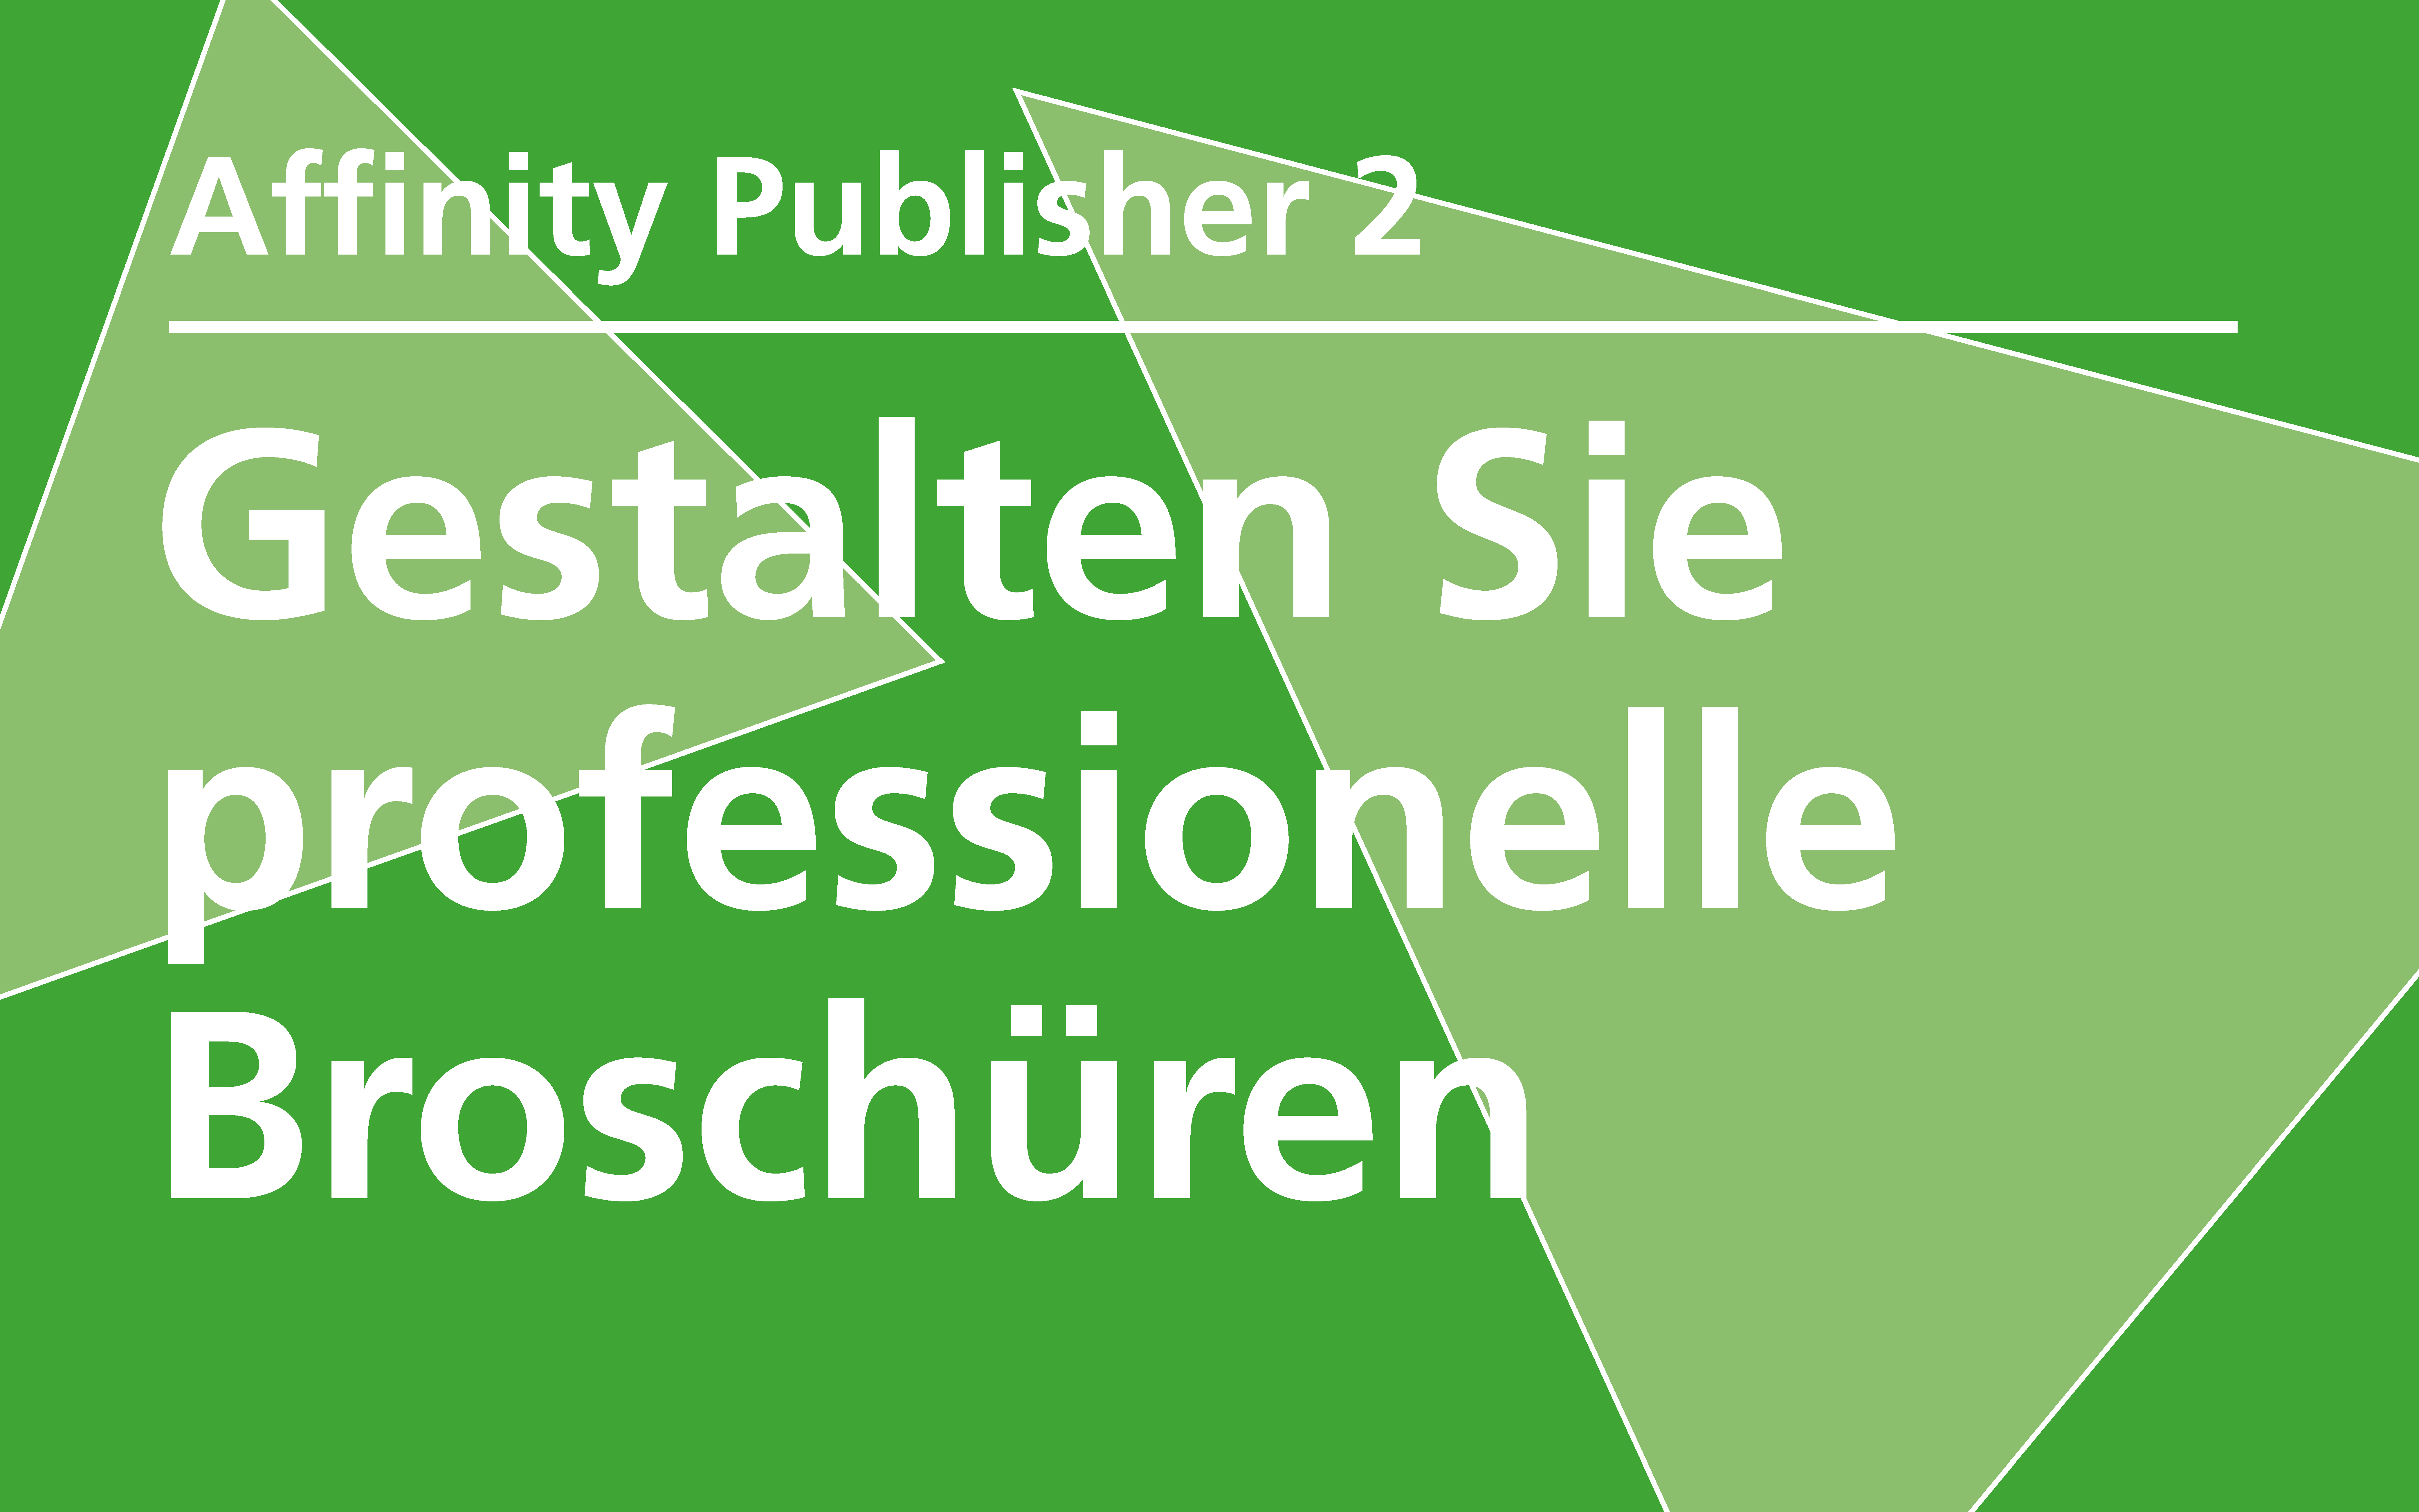 Affinity Publisher 2 – Professionelle Broschüren gestalten